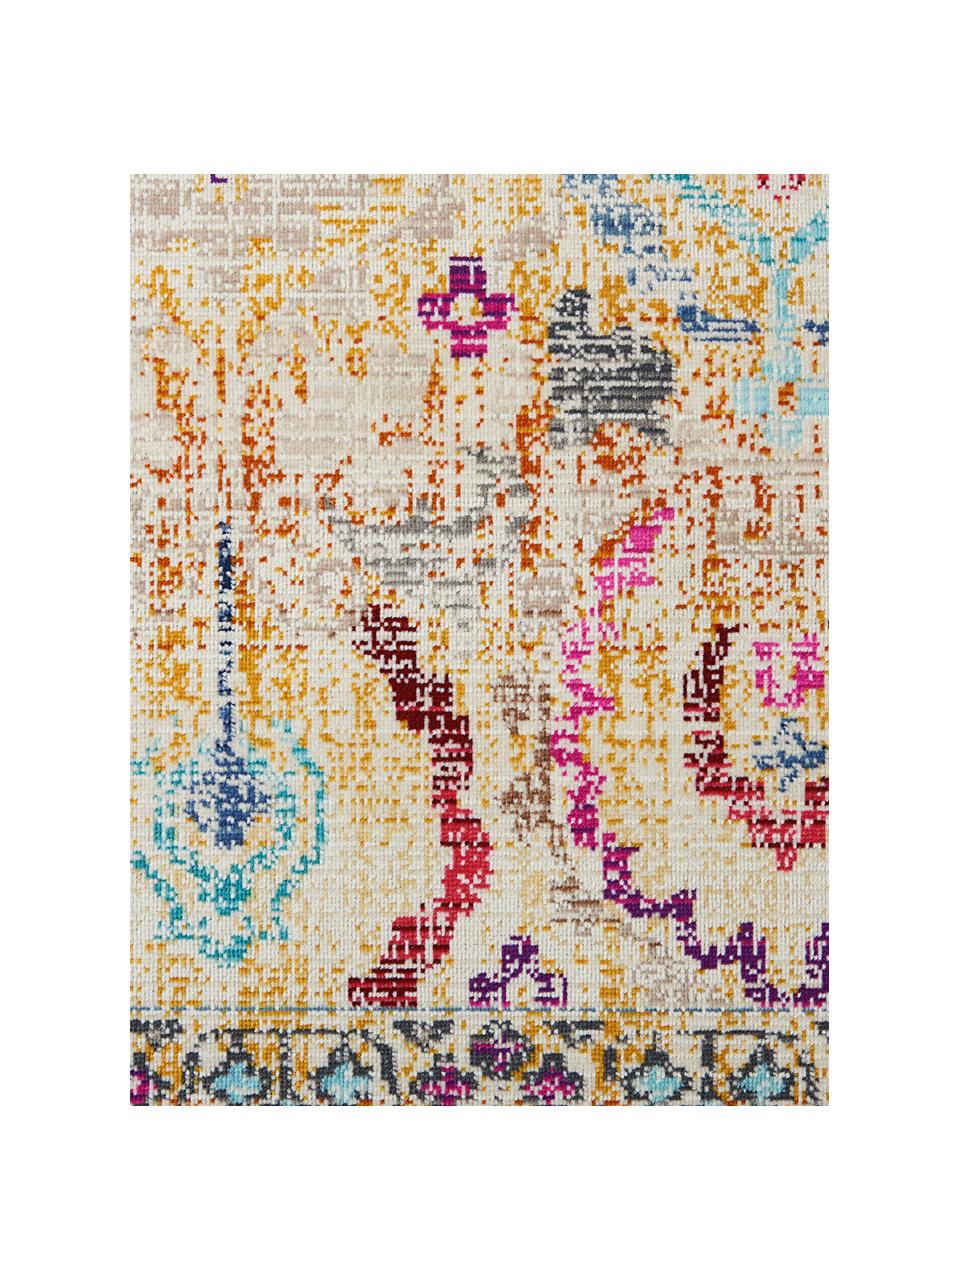 Niederflor-Teppich Kashan Vintage mit bunten Ornamenten, Flor: 100% Polypropylen, Beige, Mehrfarbig, gemustert, B 120 x L 180 cm (Grösse S)